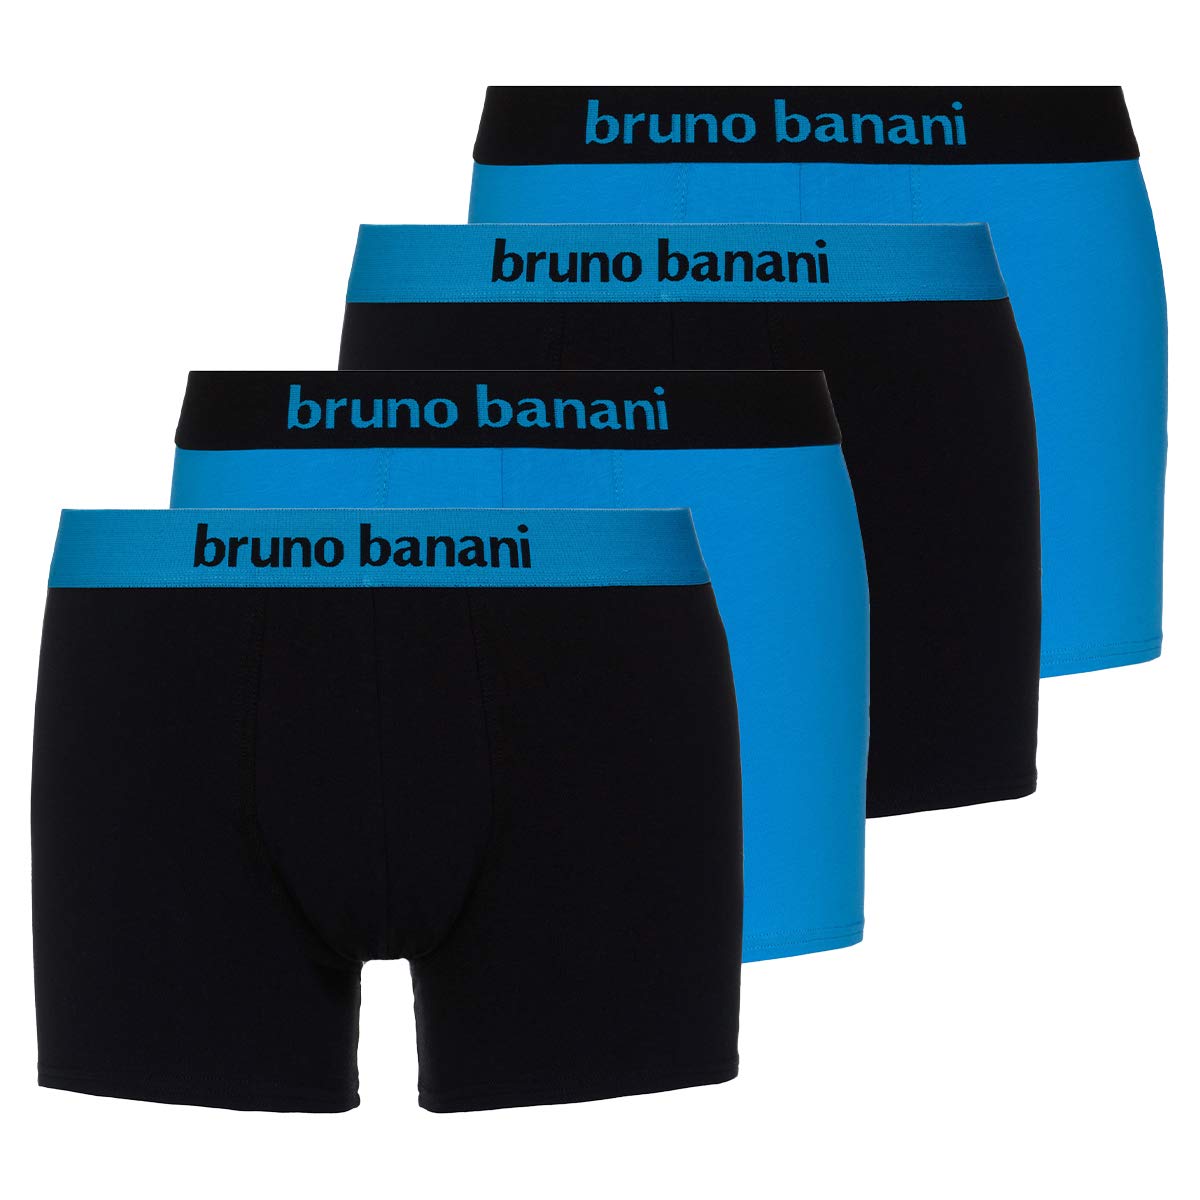 bruno banani - Flowing - Short - 4er Pack (5 Aqua Blue / Schwarz)